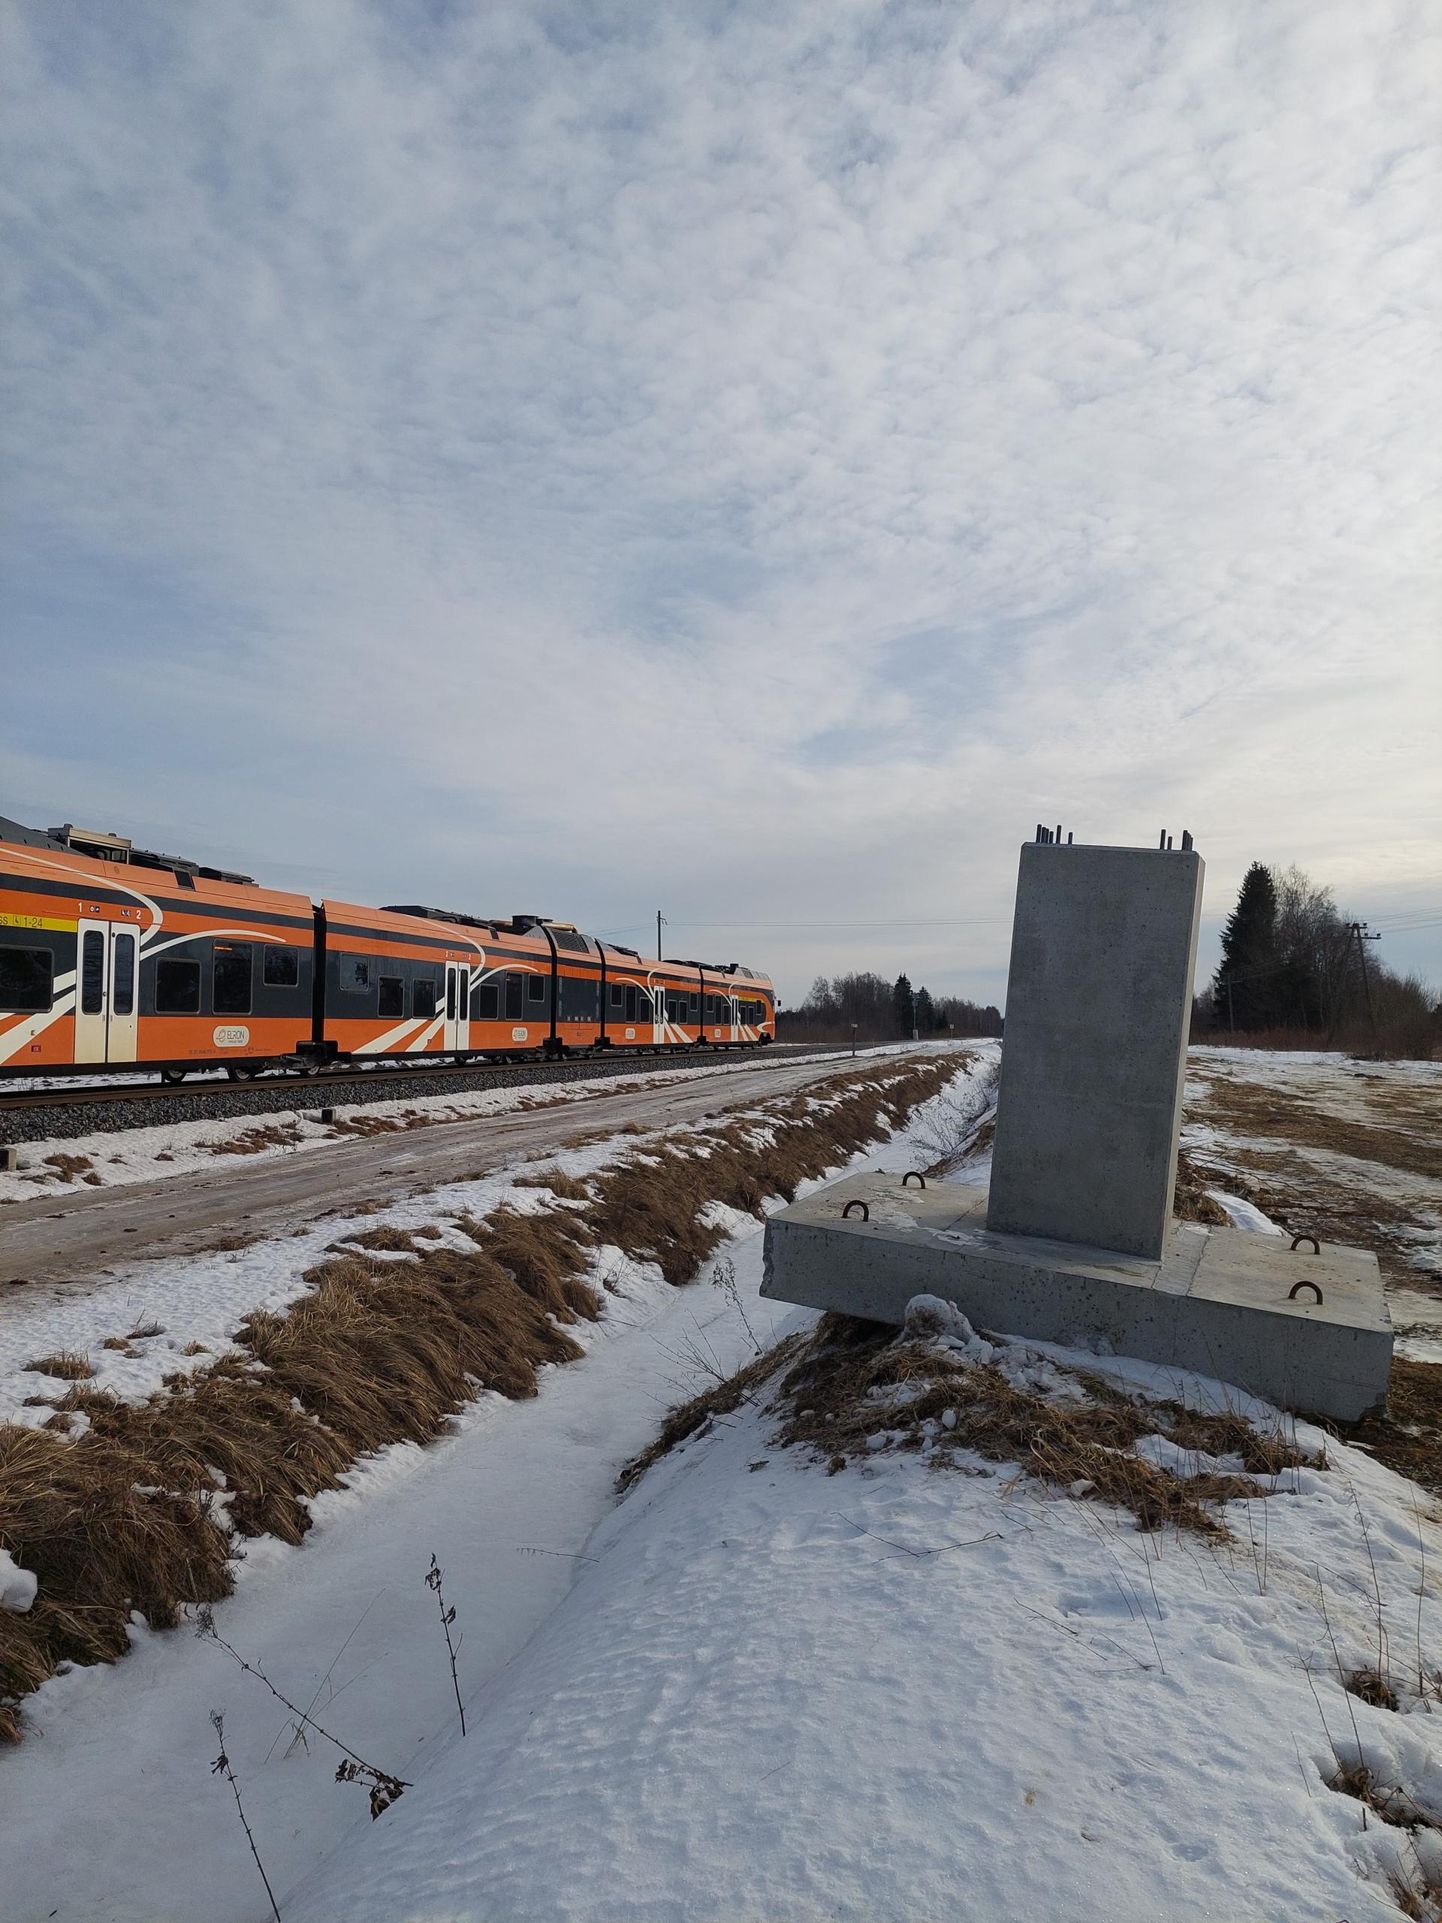 Tapa ja Tartu vahelise raudteelõigu elektifitseerija on leitud ning kontaktvõrgu mastide jaoks vajalikud betoonmürakadki kohale veetud.